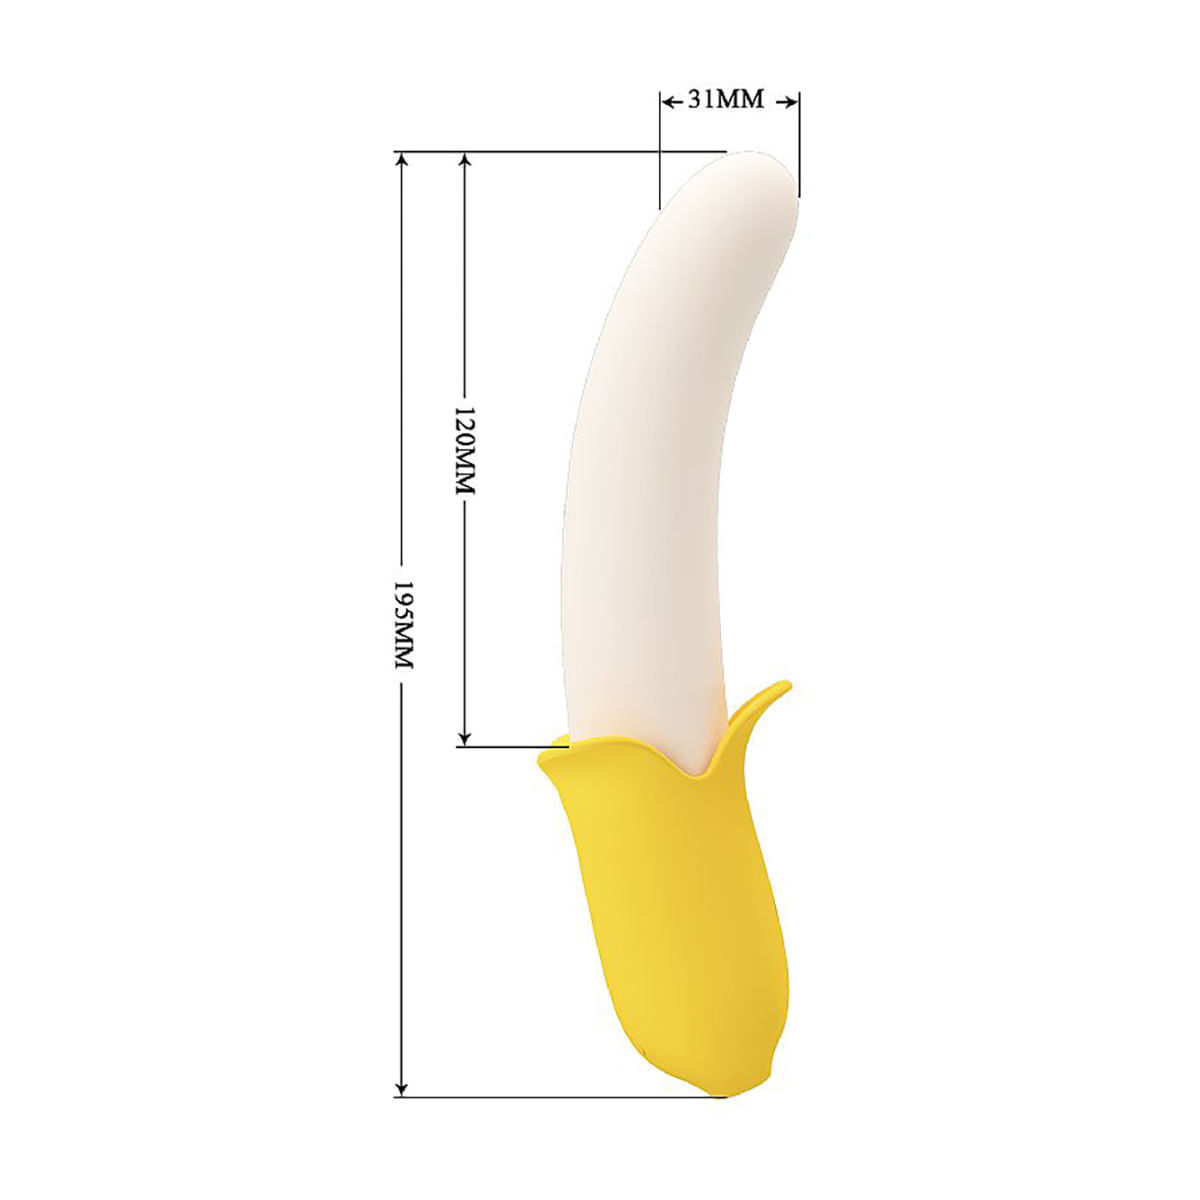 Pretty Love Banana Geek Vibrador de Ponto G com Vai e Vem e 7 Funções de Vibração Sexy Import